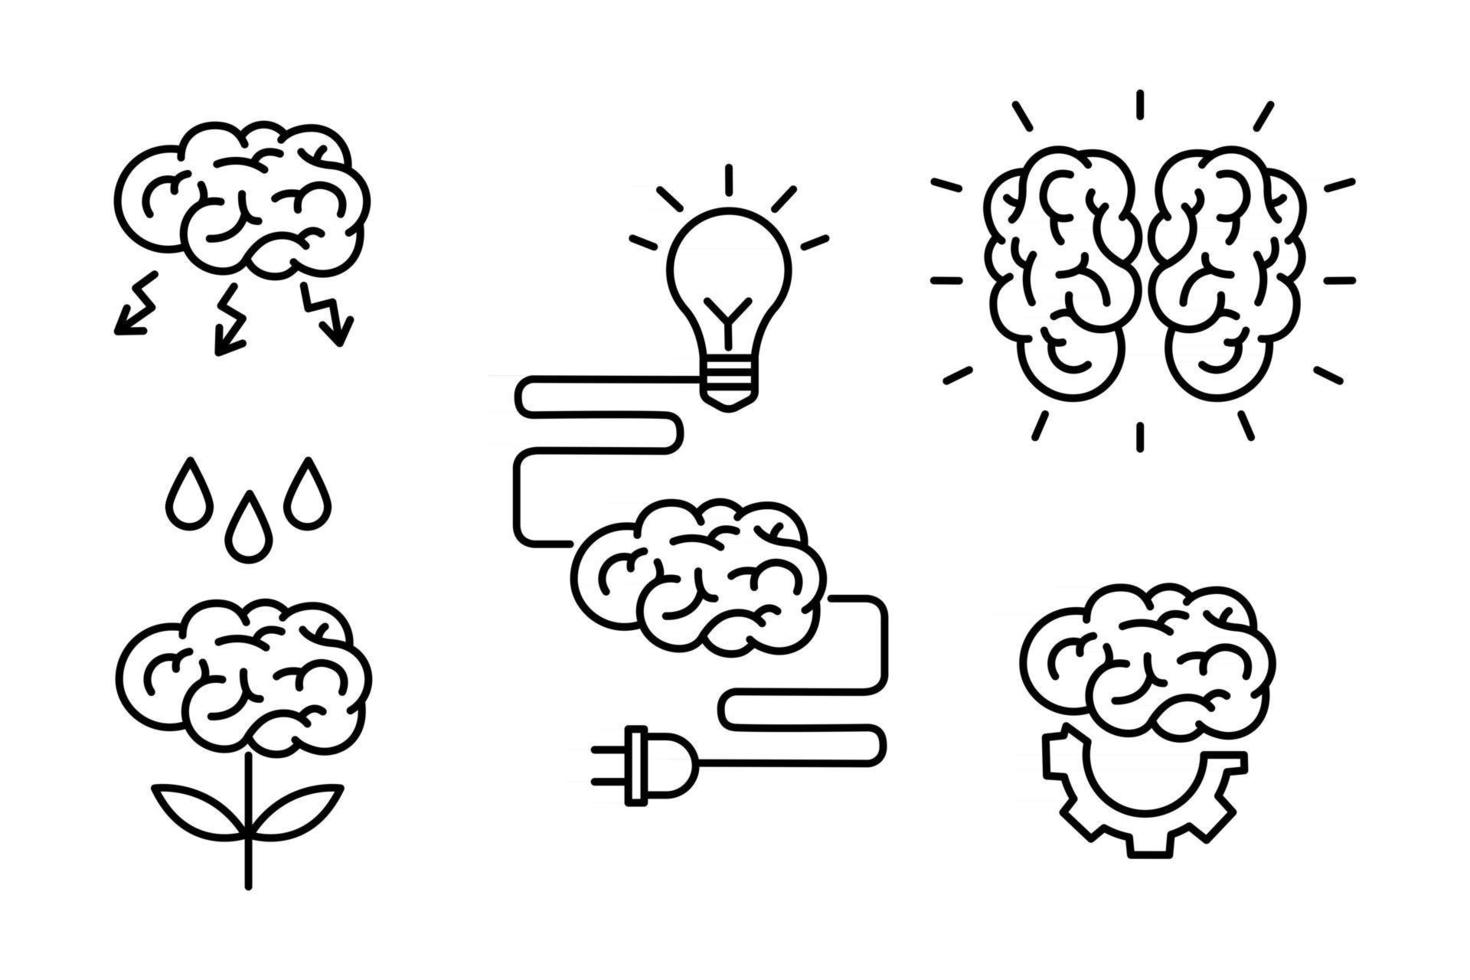 cerebro, lluvia de ideas, idea, creatividad, concepto de conocimiento establecer iconos en el estilo de contorno. colección de procesos de la mente humana, características cerebrales y emociones. Ilustración de vector doodle.